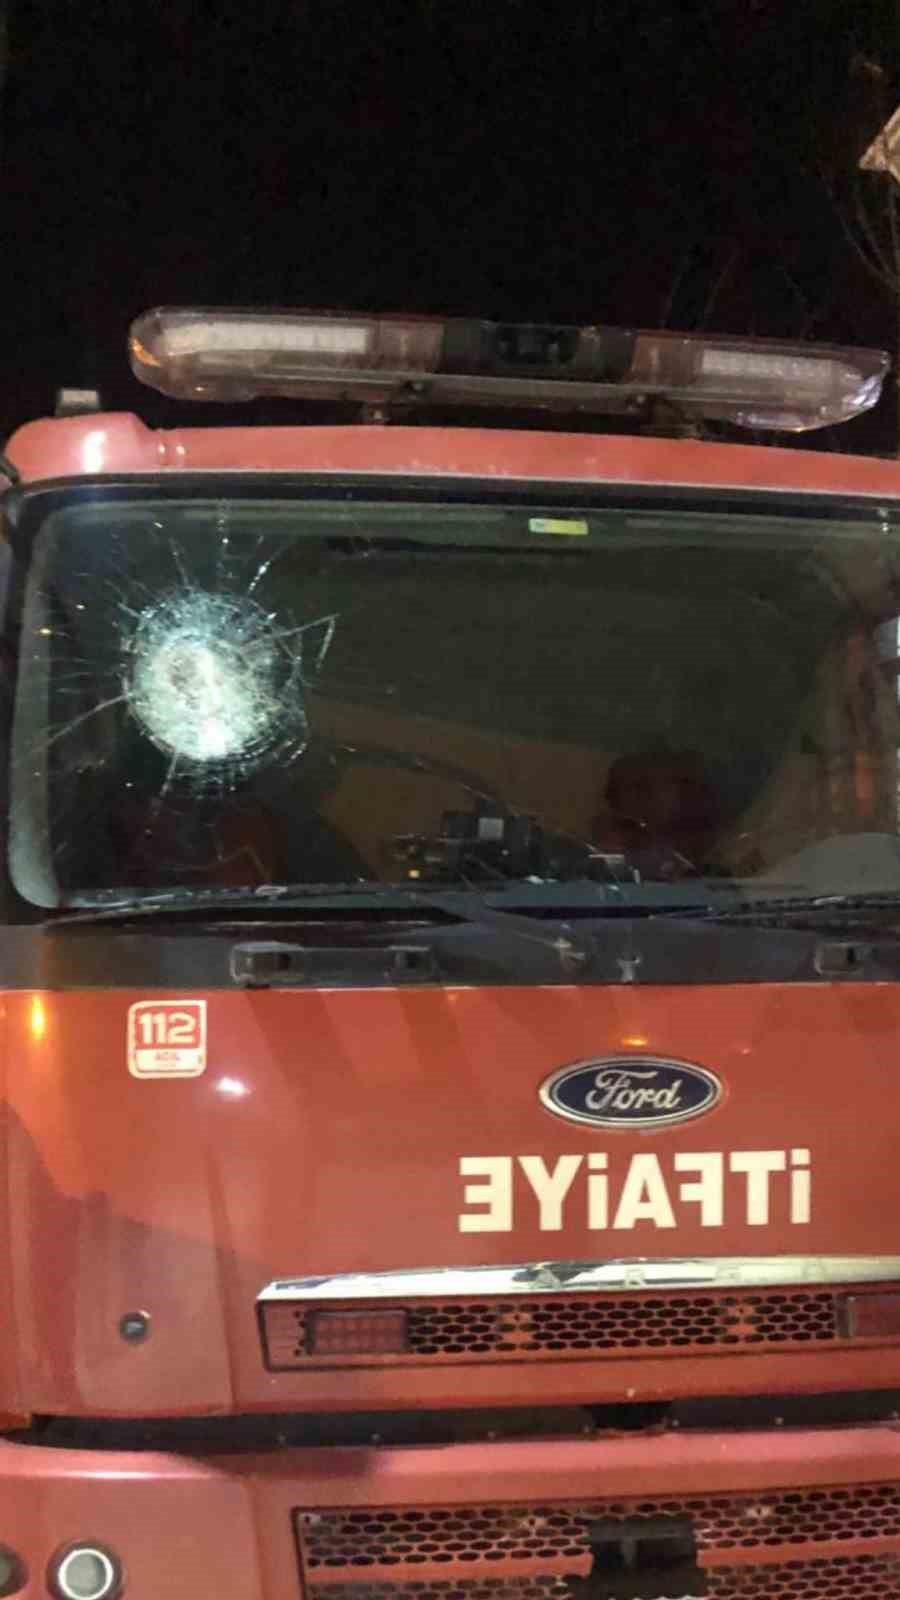 Batman’da izinsiz gösteri: Göstericilerin saldırdığı itfaiye aracının camı kırıldı
?v=1